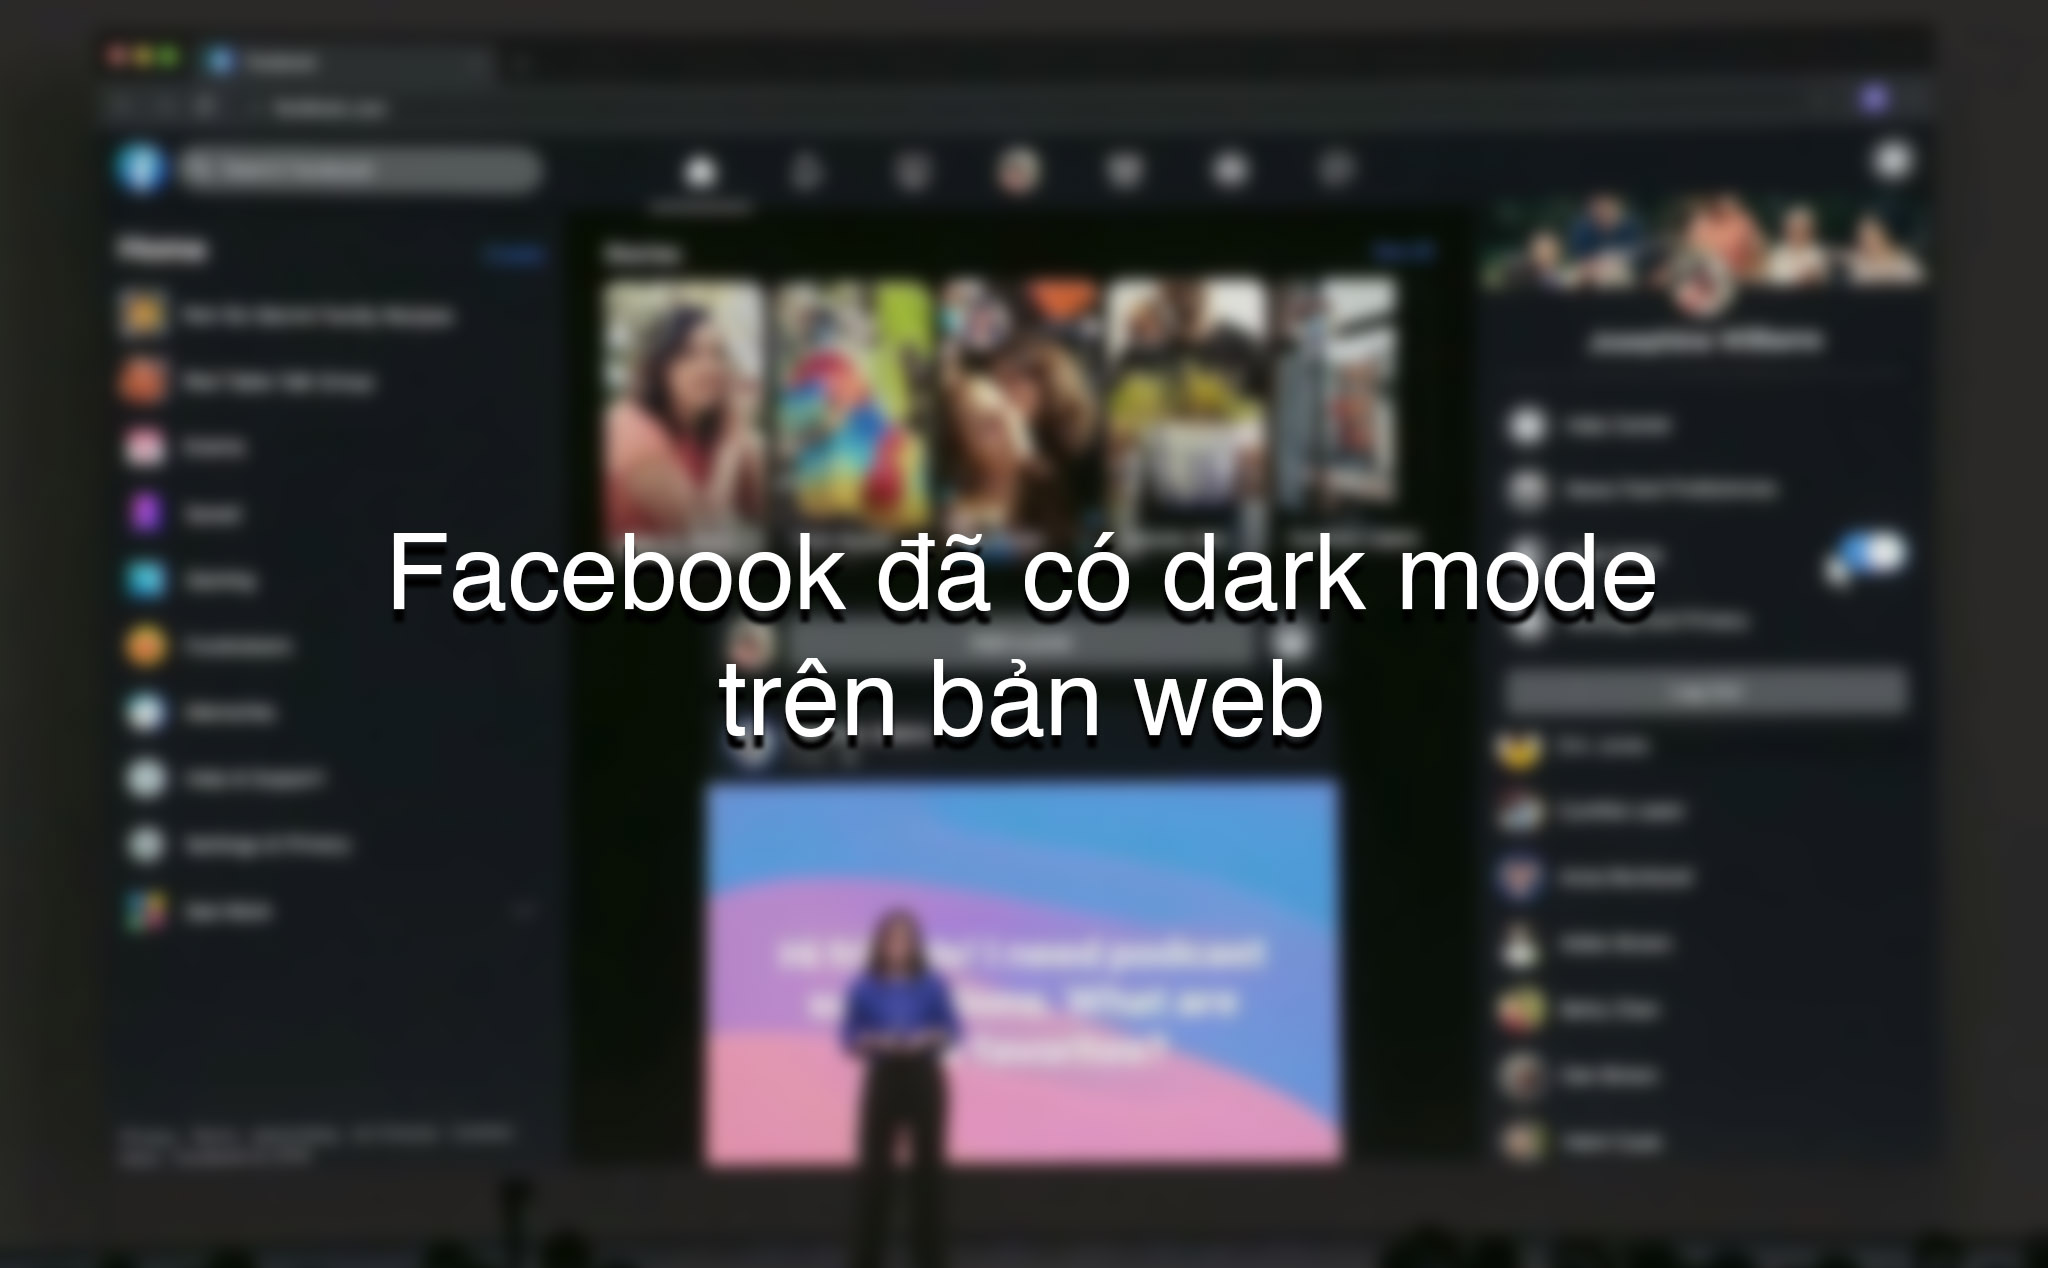 Facebook bắt đầu thử nghiệm giao diện web mới, kèm cả dark mode